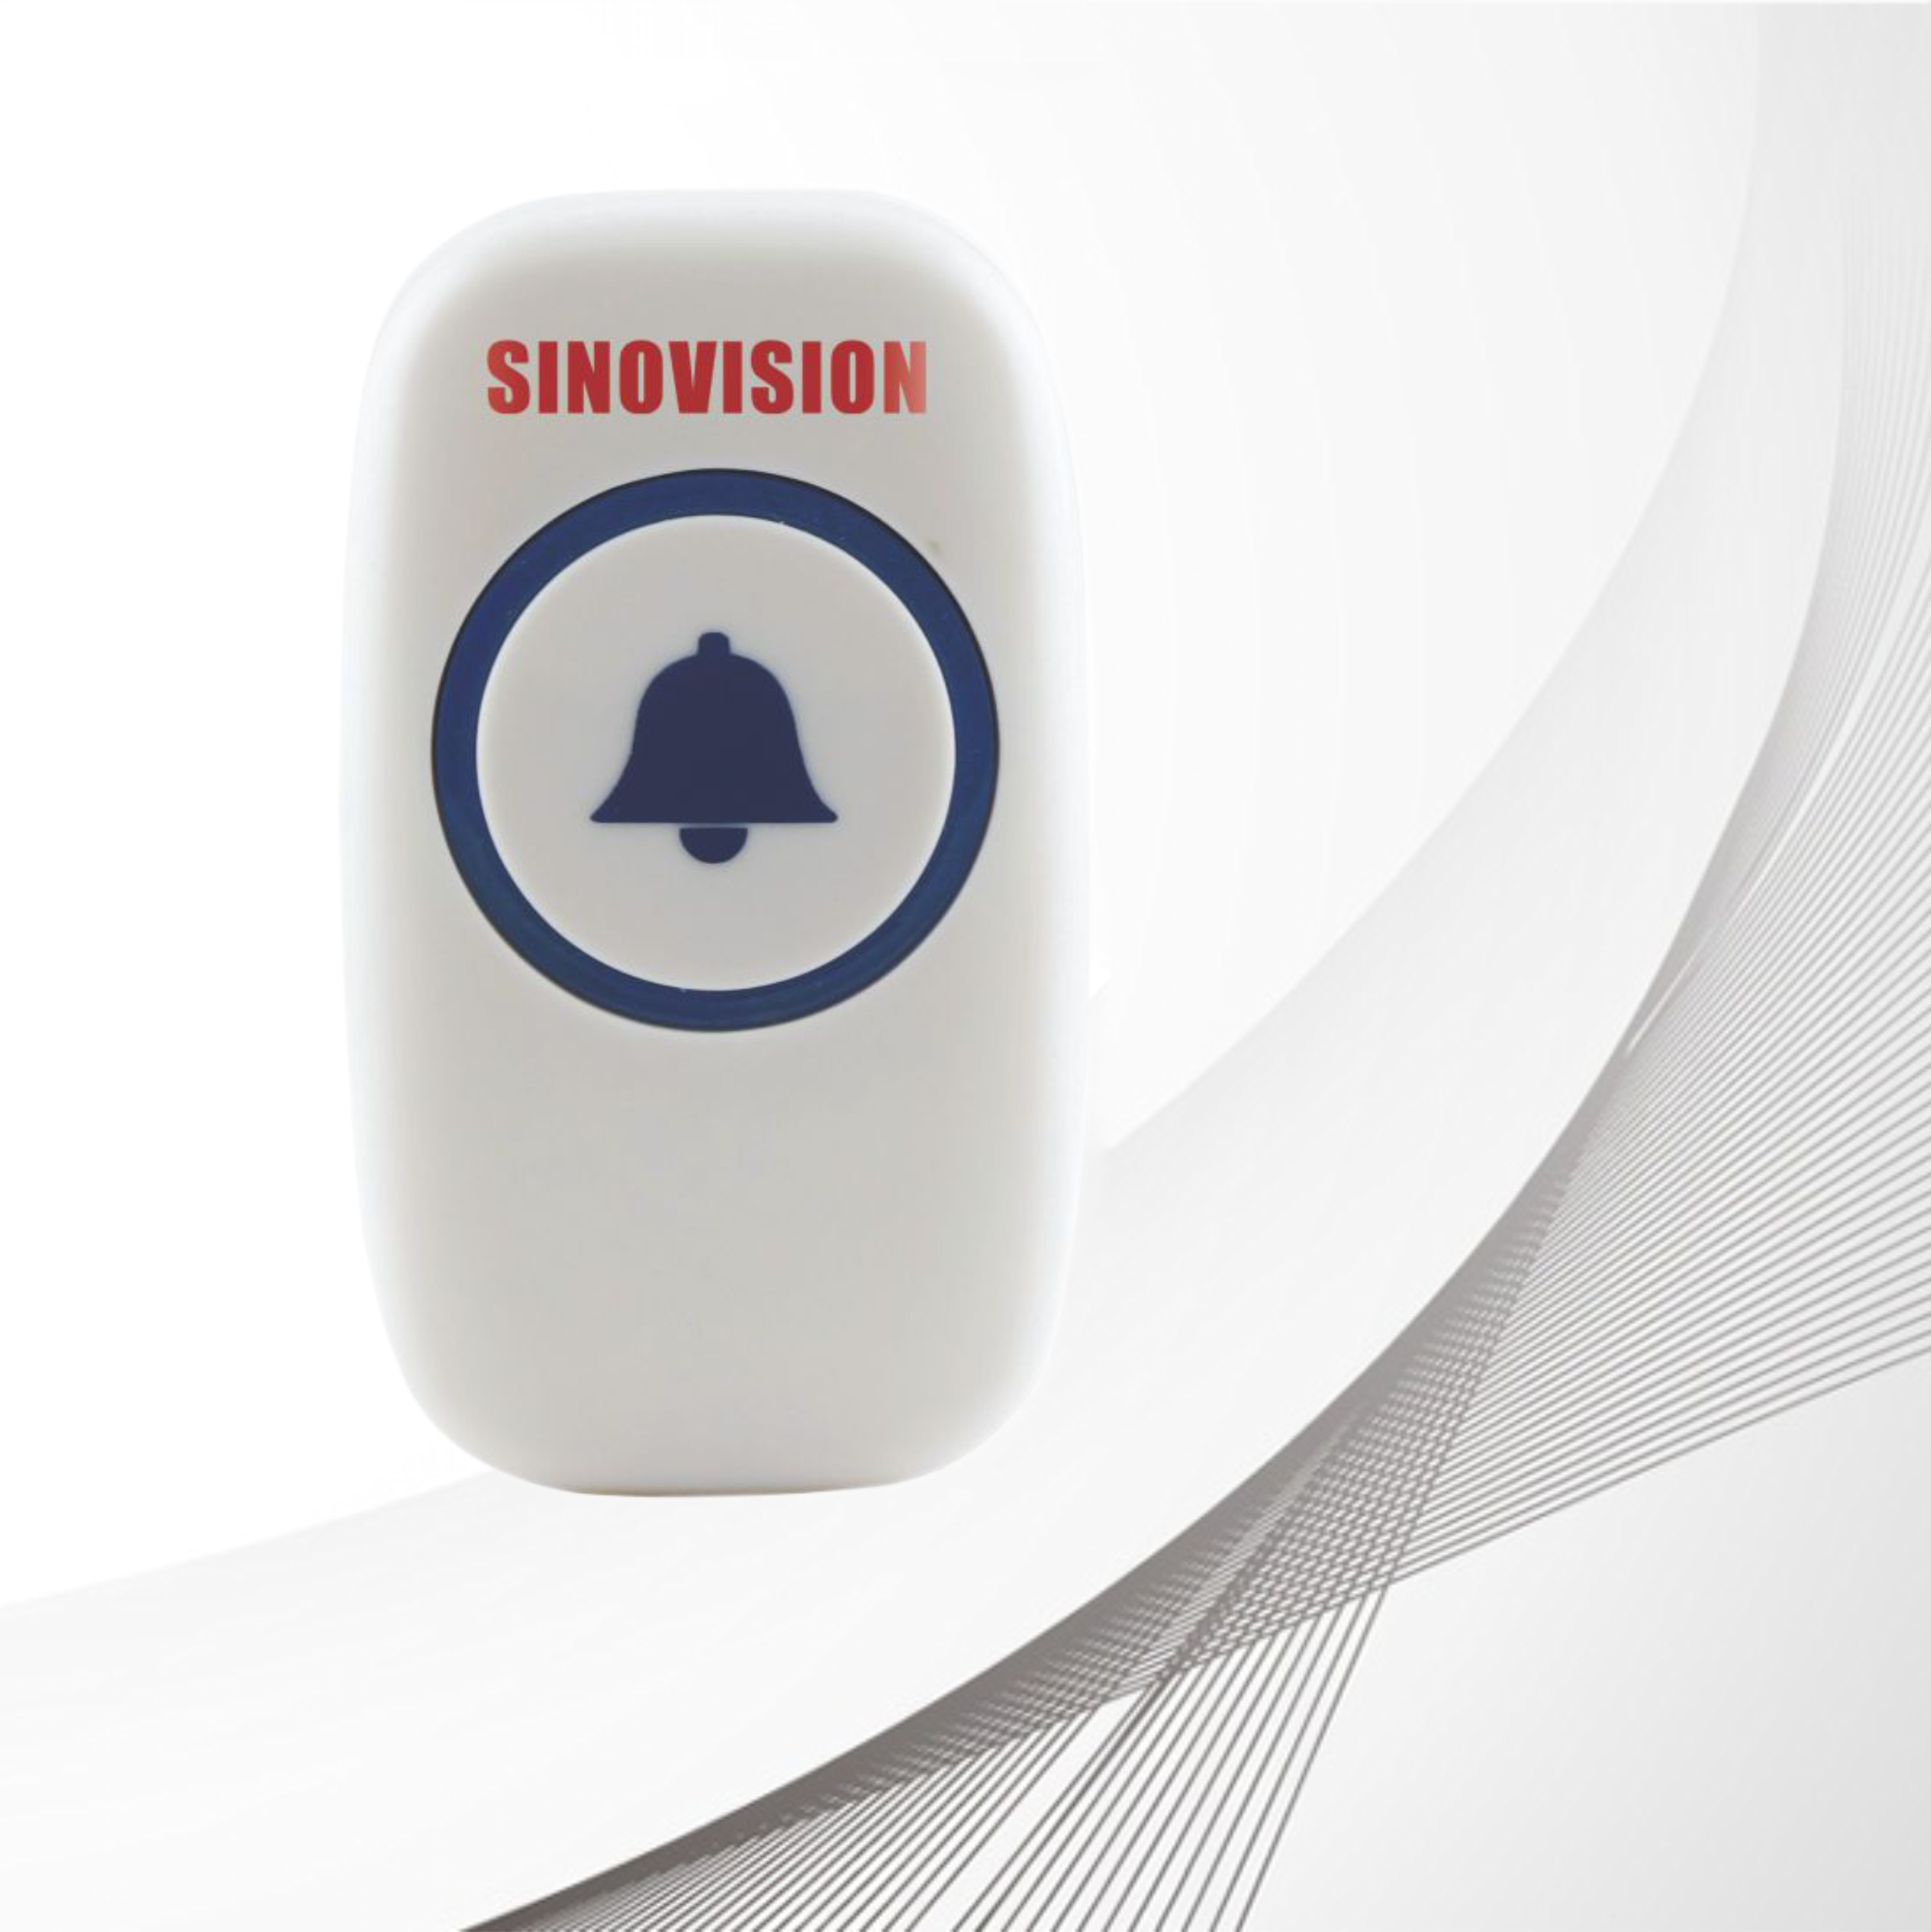 Sinovision Smart door bell